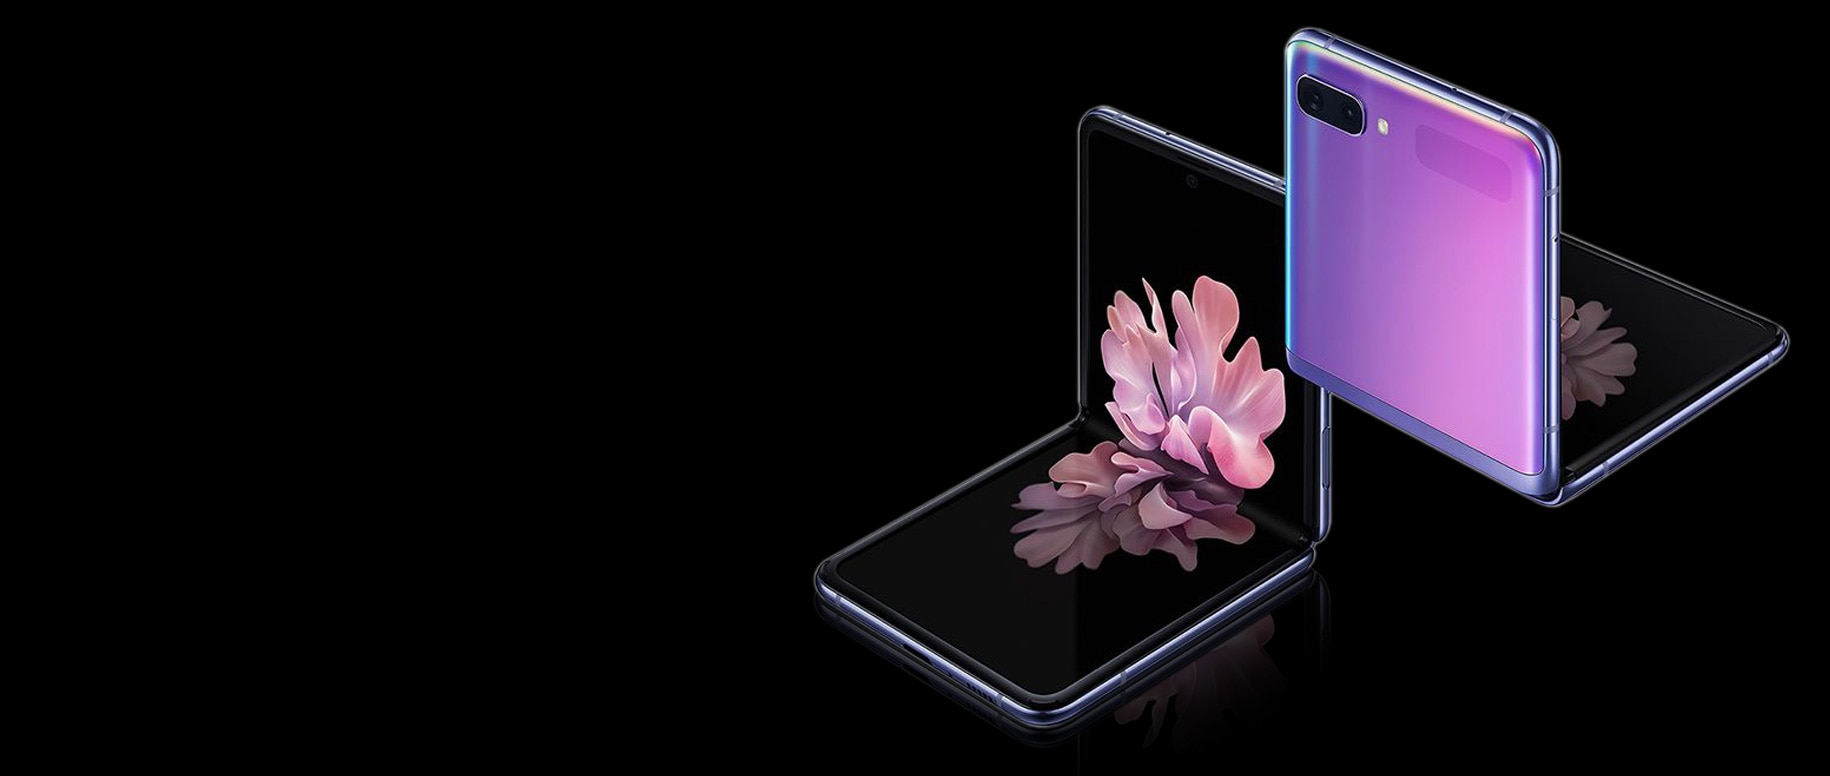 Două telefoane Galaxy Z Flip în Mirror Purple la un unghi de trei sferturi, unul văzut din față și unul văzut din spate. Ambele sunt pliate în unghi drept cu pliere freestop. Cel văzut din față are tapetul cu flori înflorite pe ecran